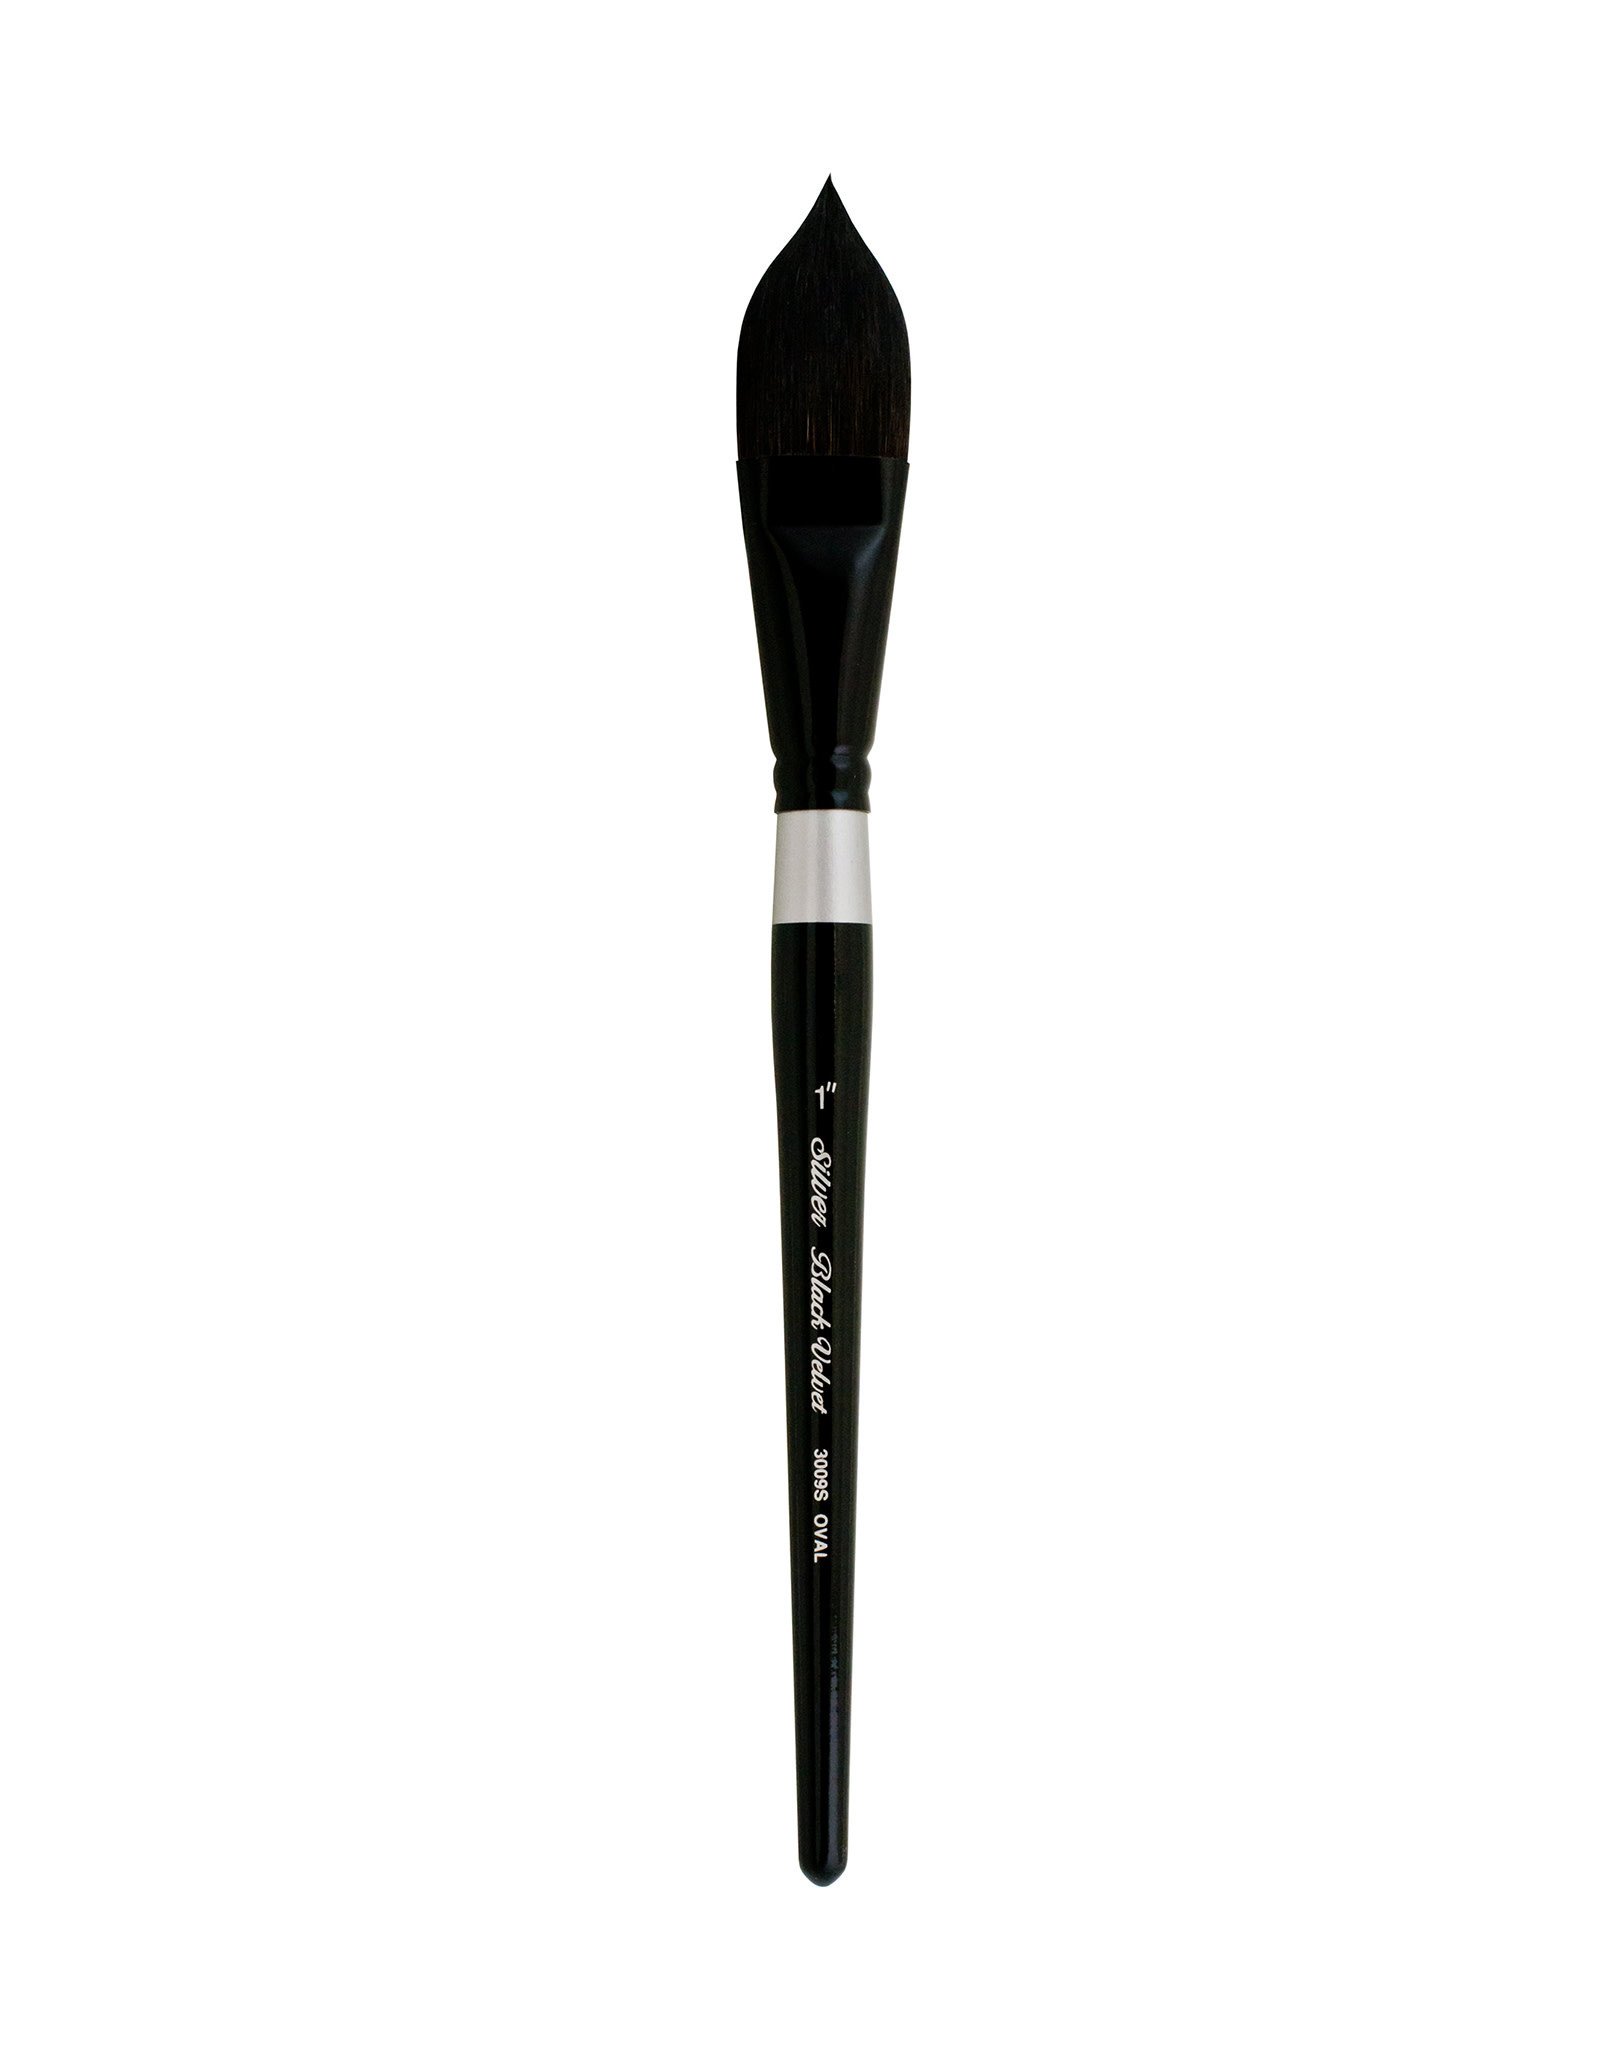 Silver Brush Limited Silver Brush Black Velvet Oval Wash 1"